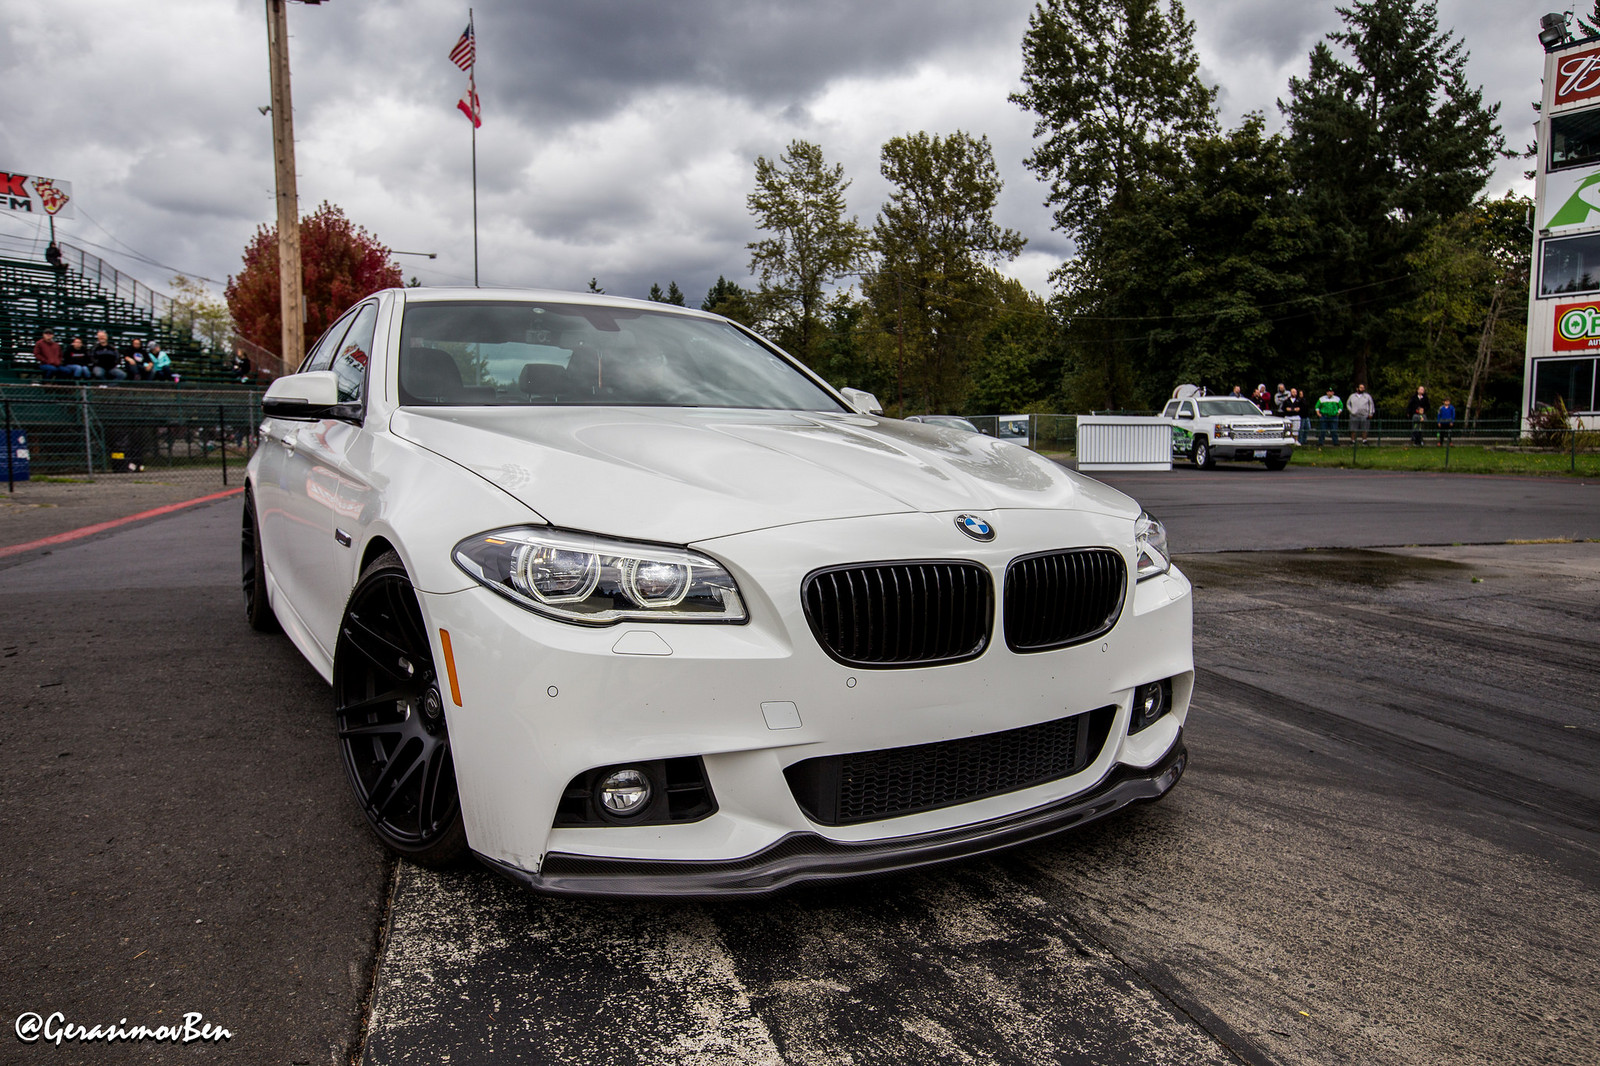 2015 BMW 535d 535d X-drive 1/4 mile trap speeds 0-60 - DragTimes.com